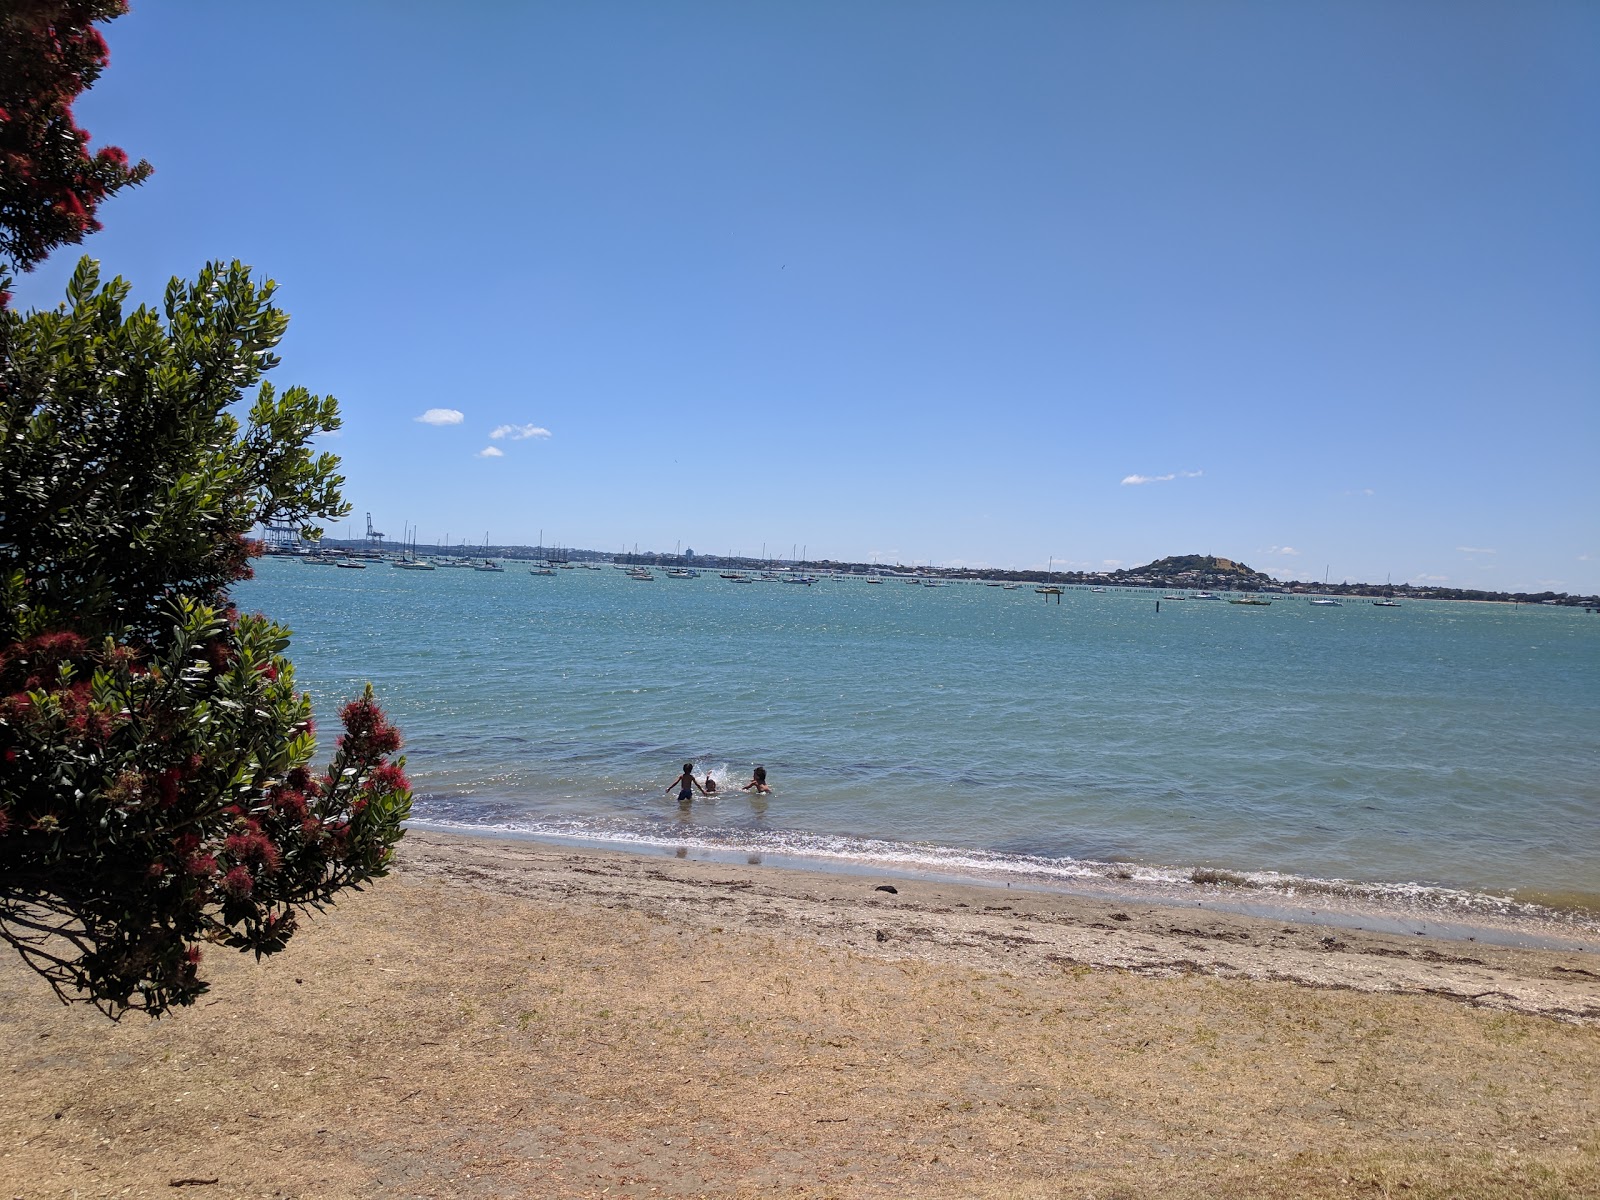 Photo de Okahu Bay Beach - endroit populaire parmi les connaisseurs de la détente